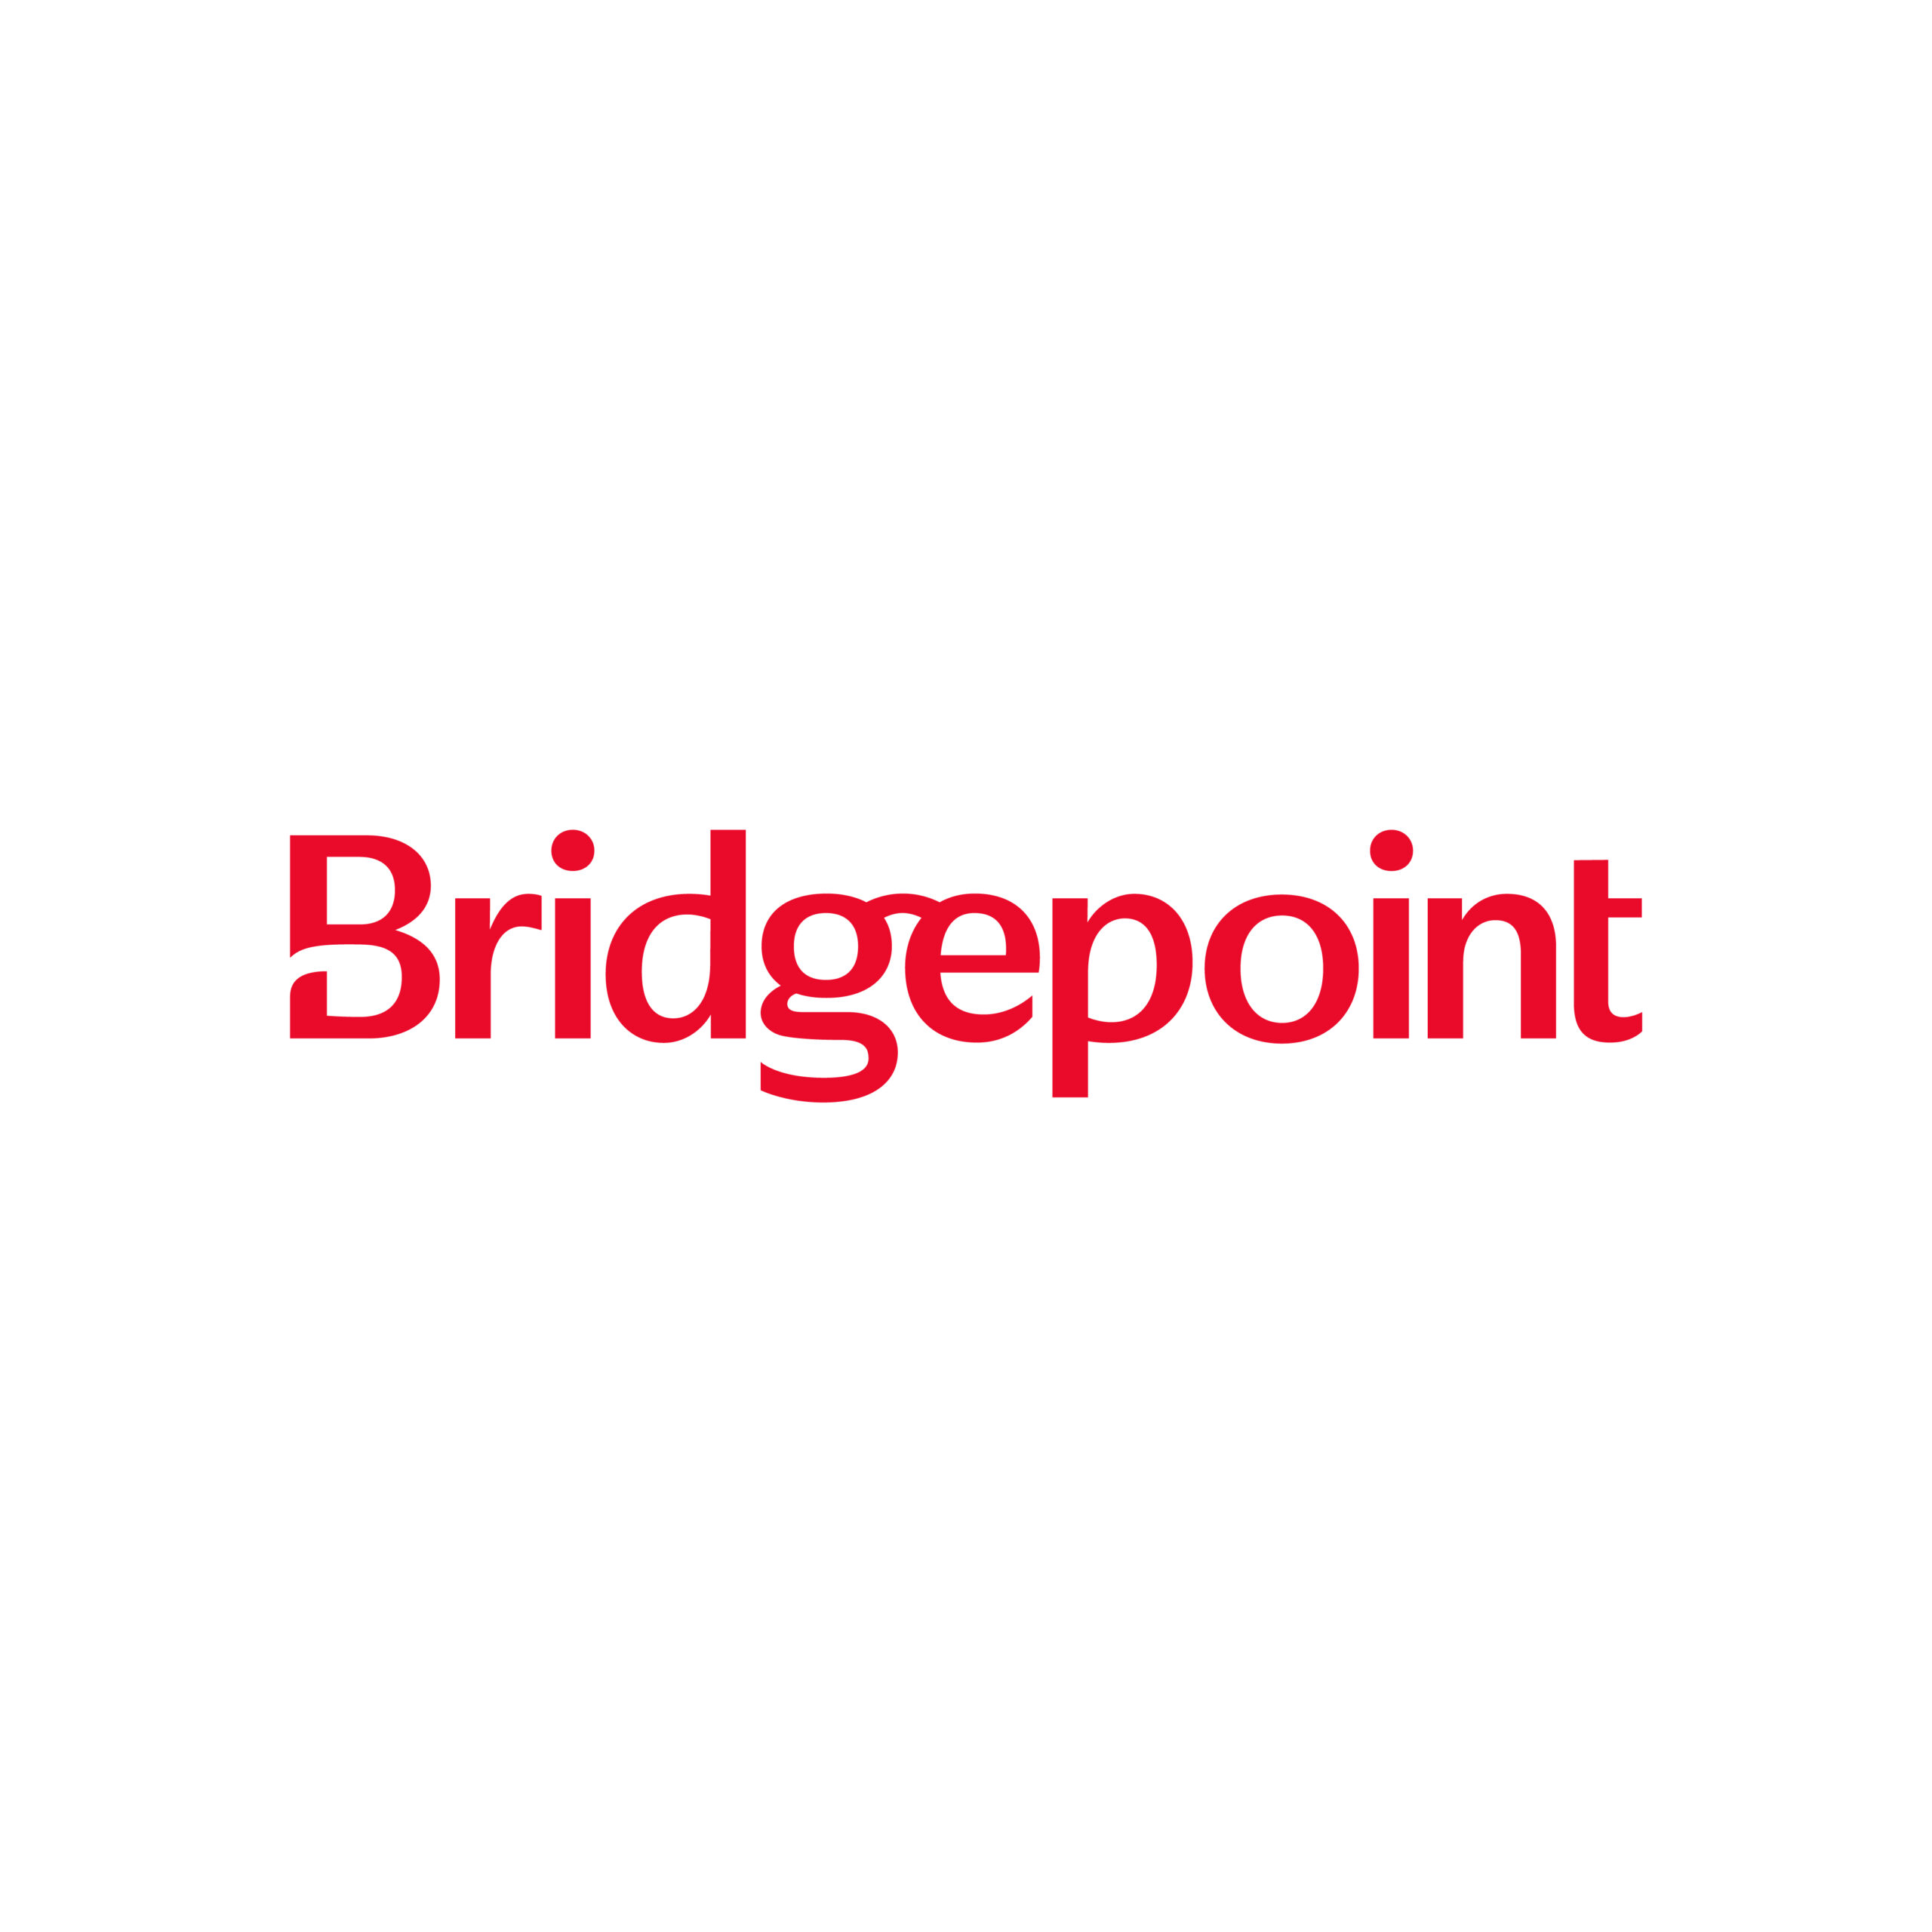 Vit bakgrund med en röd logotyp med texten "Bridgepoint"